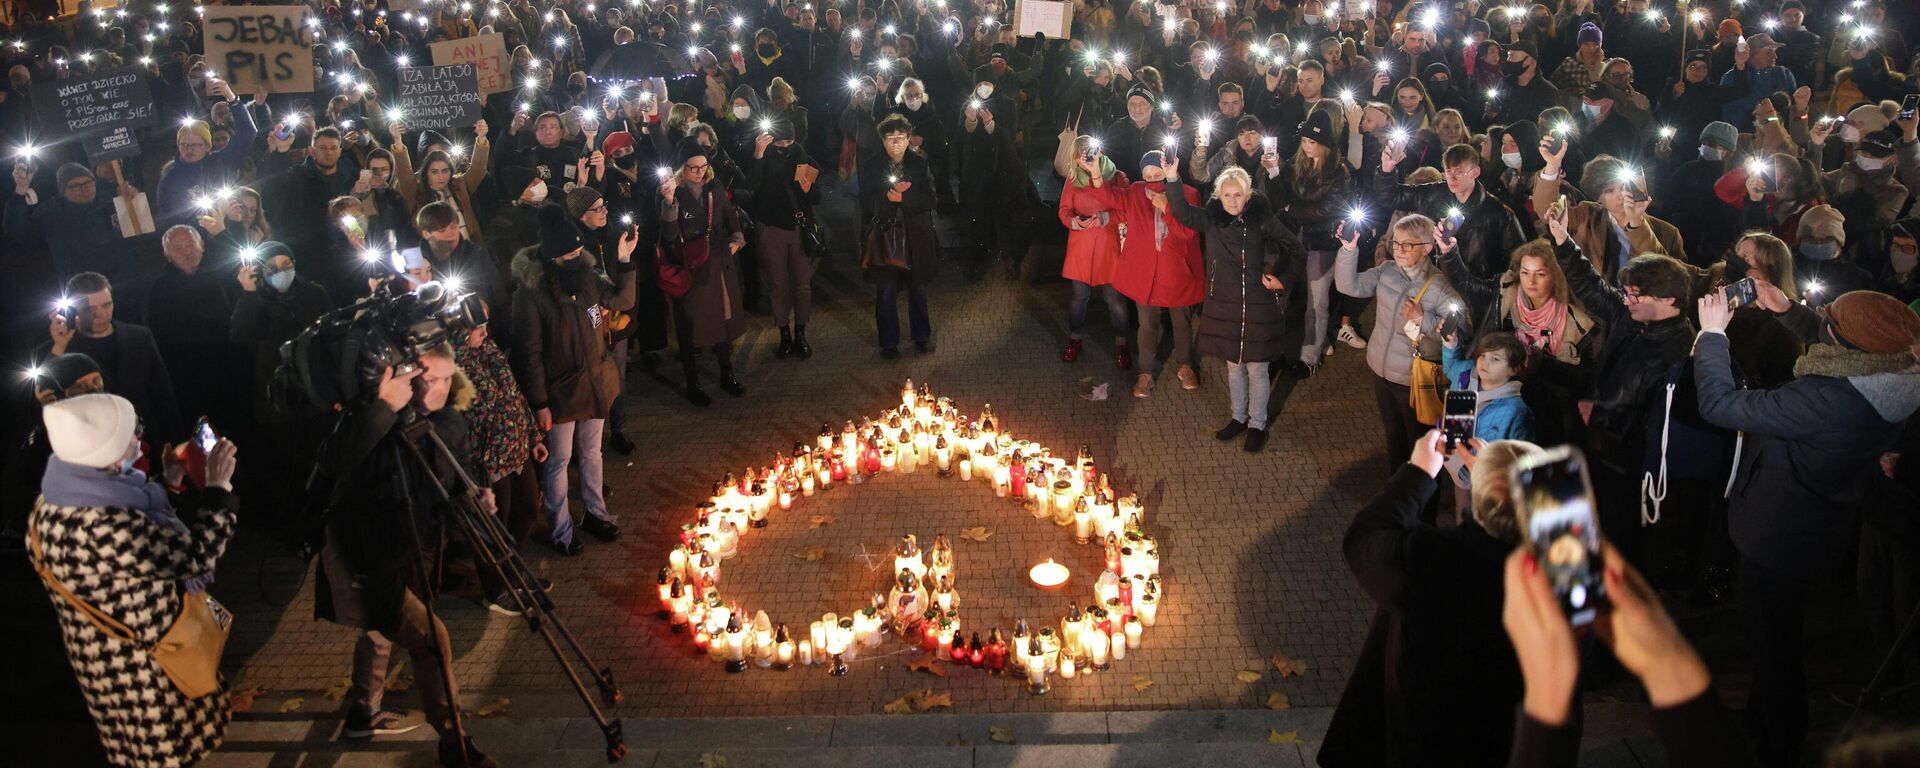 Polonya'da 30 yaşındaki Izabela adlı kadının 22 haftalık hamileyken kürtaj yasağı yüzünden ölmesine yönelik protestolar (Poznan, Polonya, 6 Kasım 2021) - Sputnik Türkiye, 1920, 08.11.2021